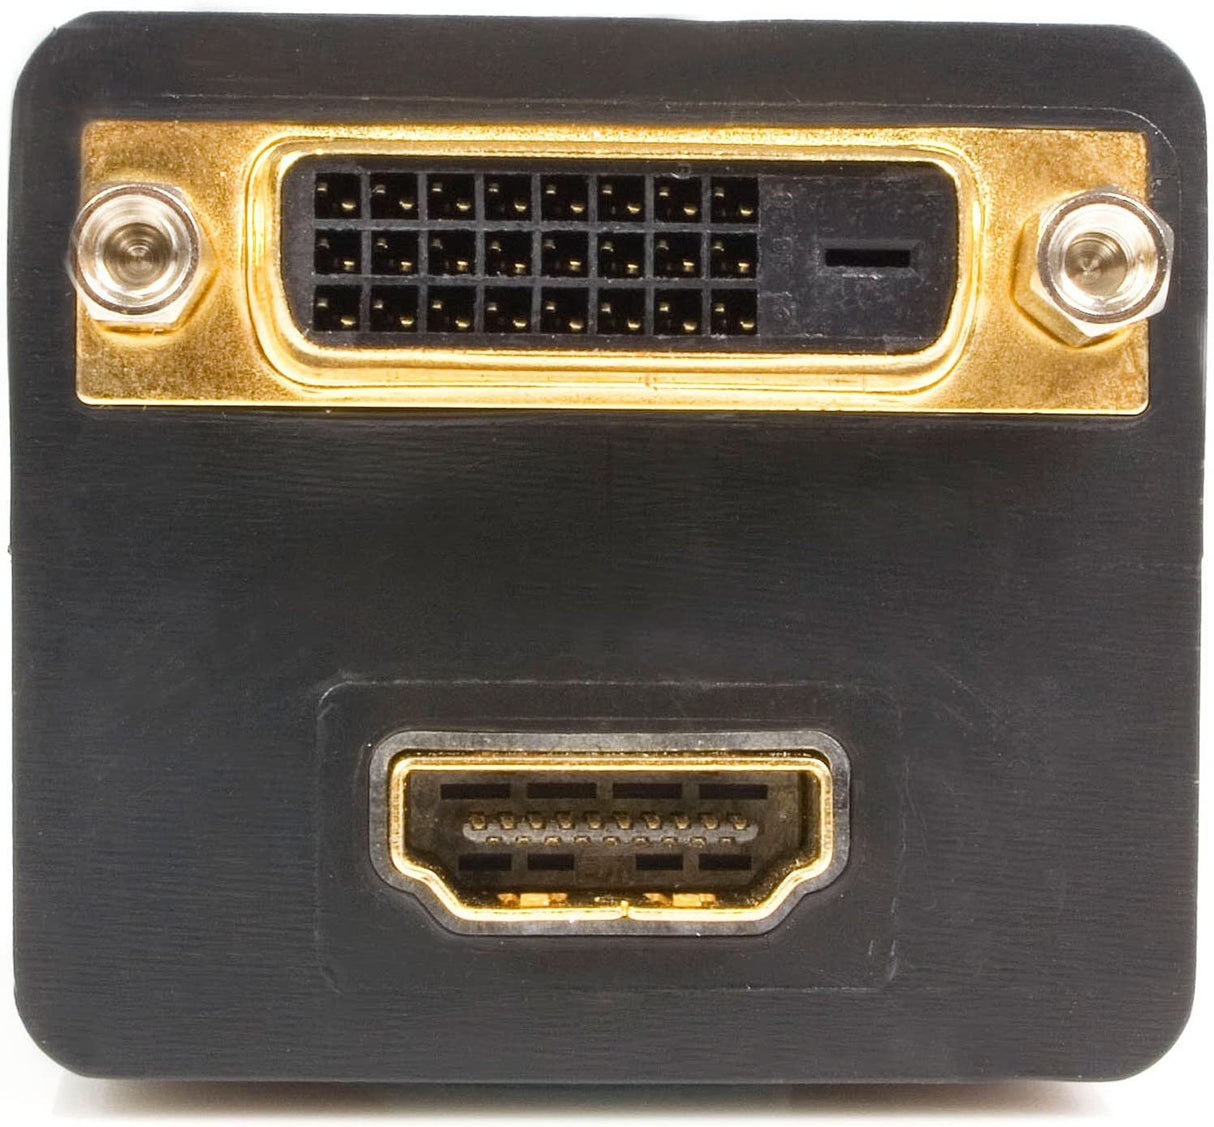 StarTech.com 1 ft. (0.3 m) HDMI Splitter Cable - 2 Port - HDMI to HDMI and DVI-D Adapter - HDMI Splitter (HDMISPL1DH) Black